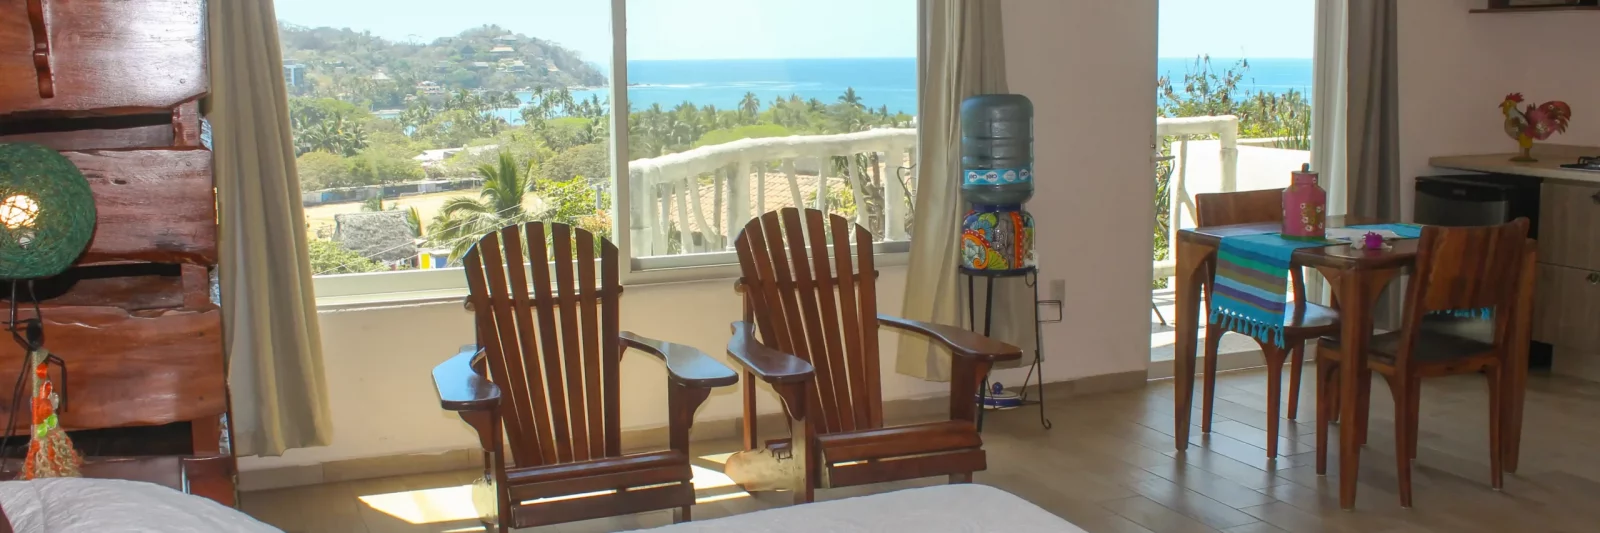 hotel en sayulita vista al mar villa los corales